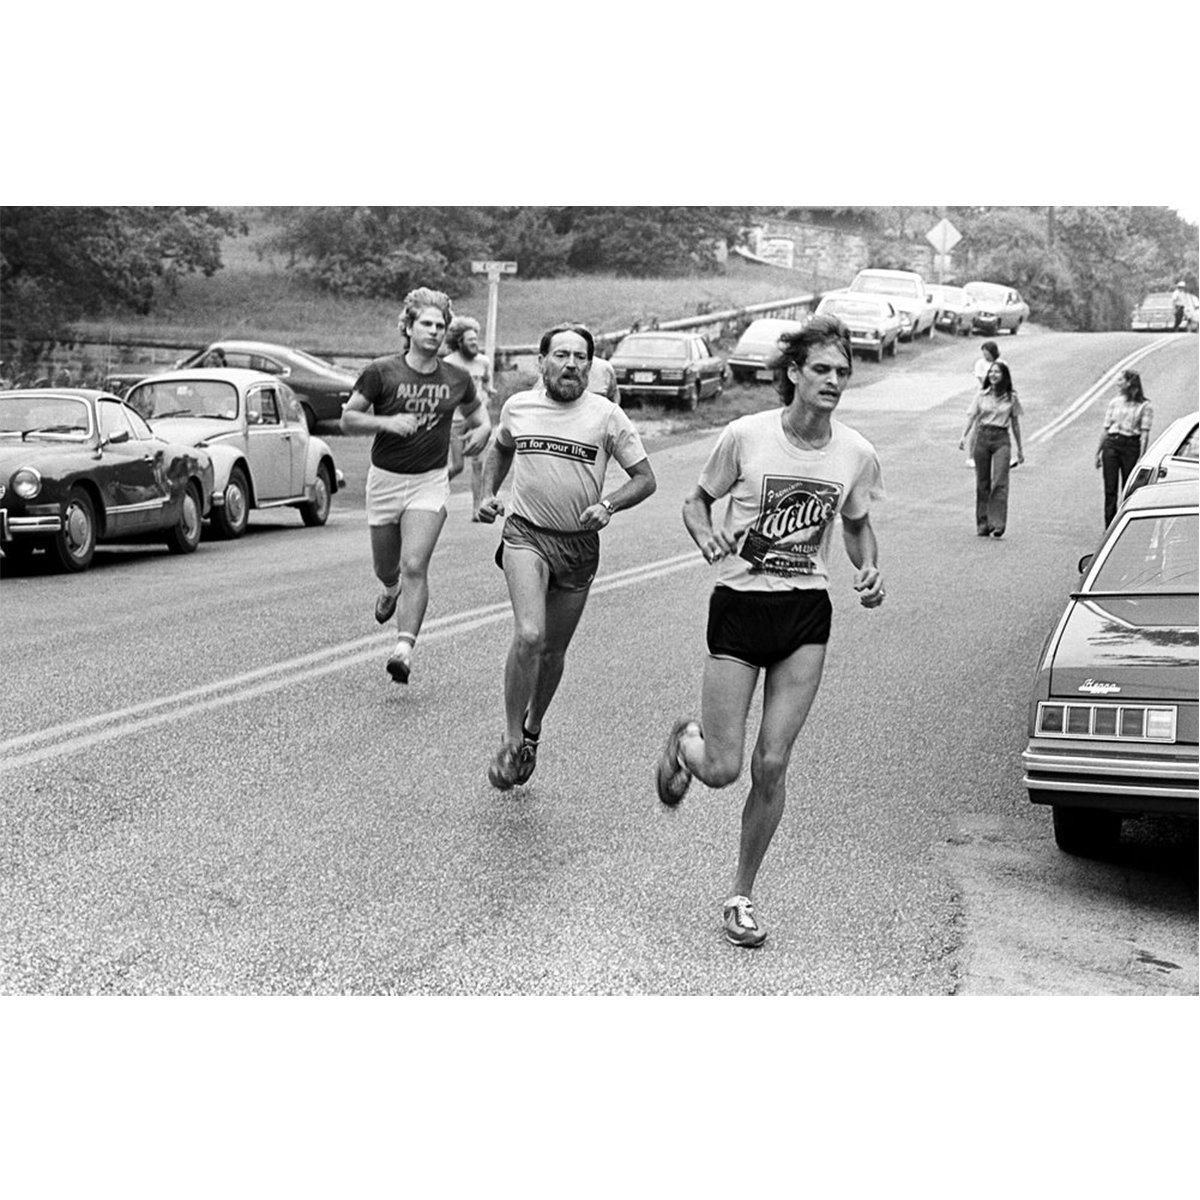 Willie running by Scott Newton